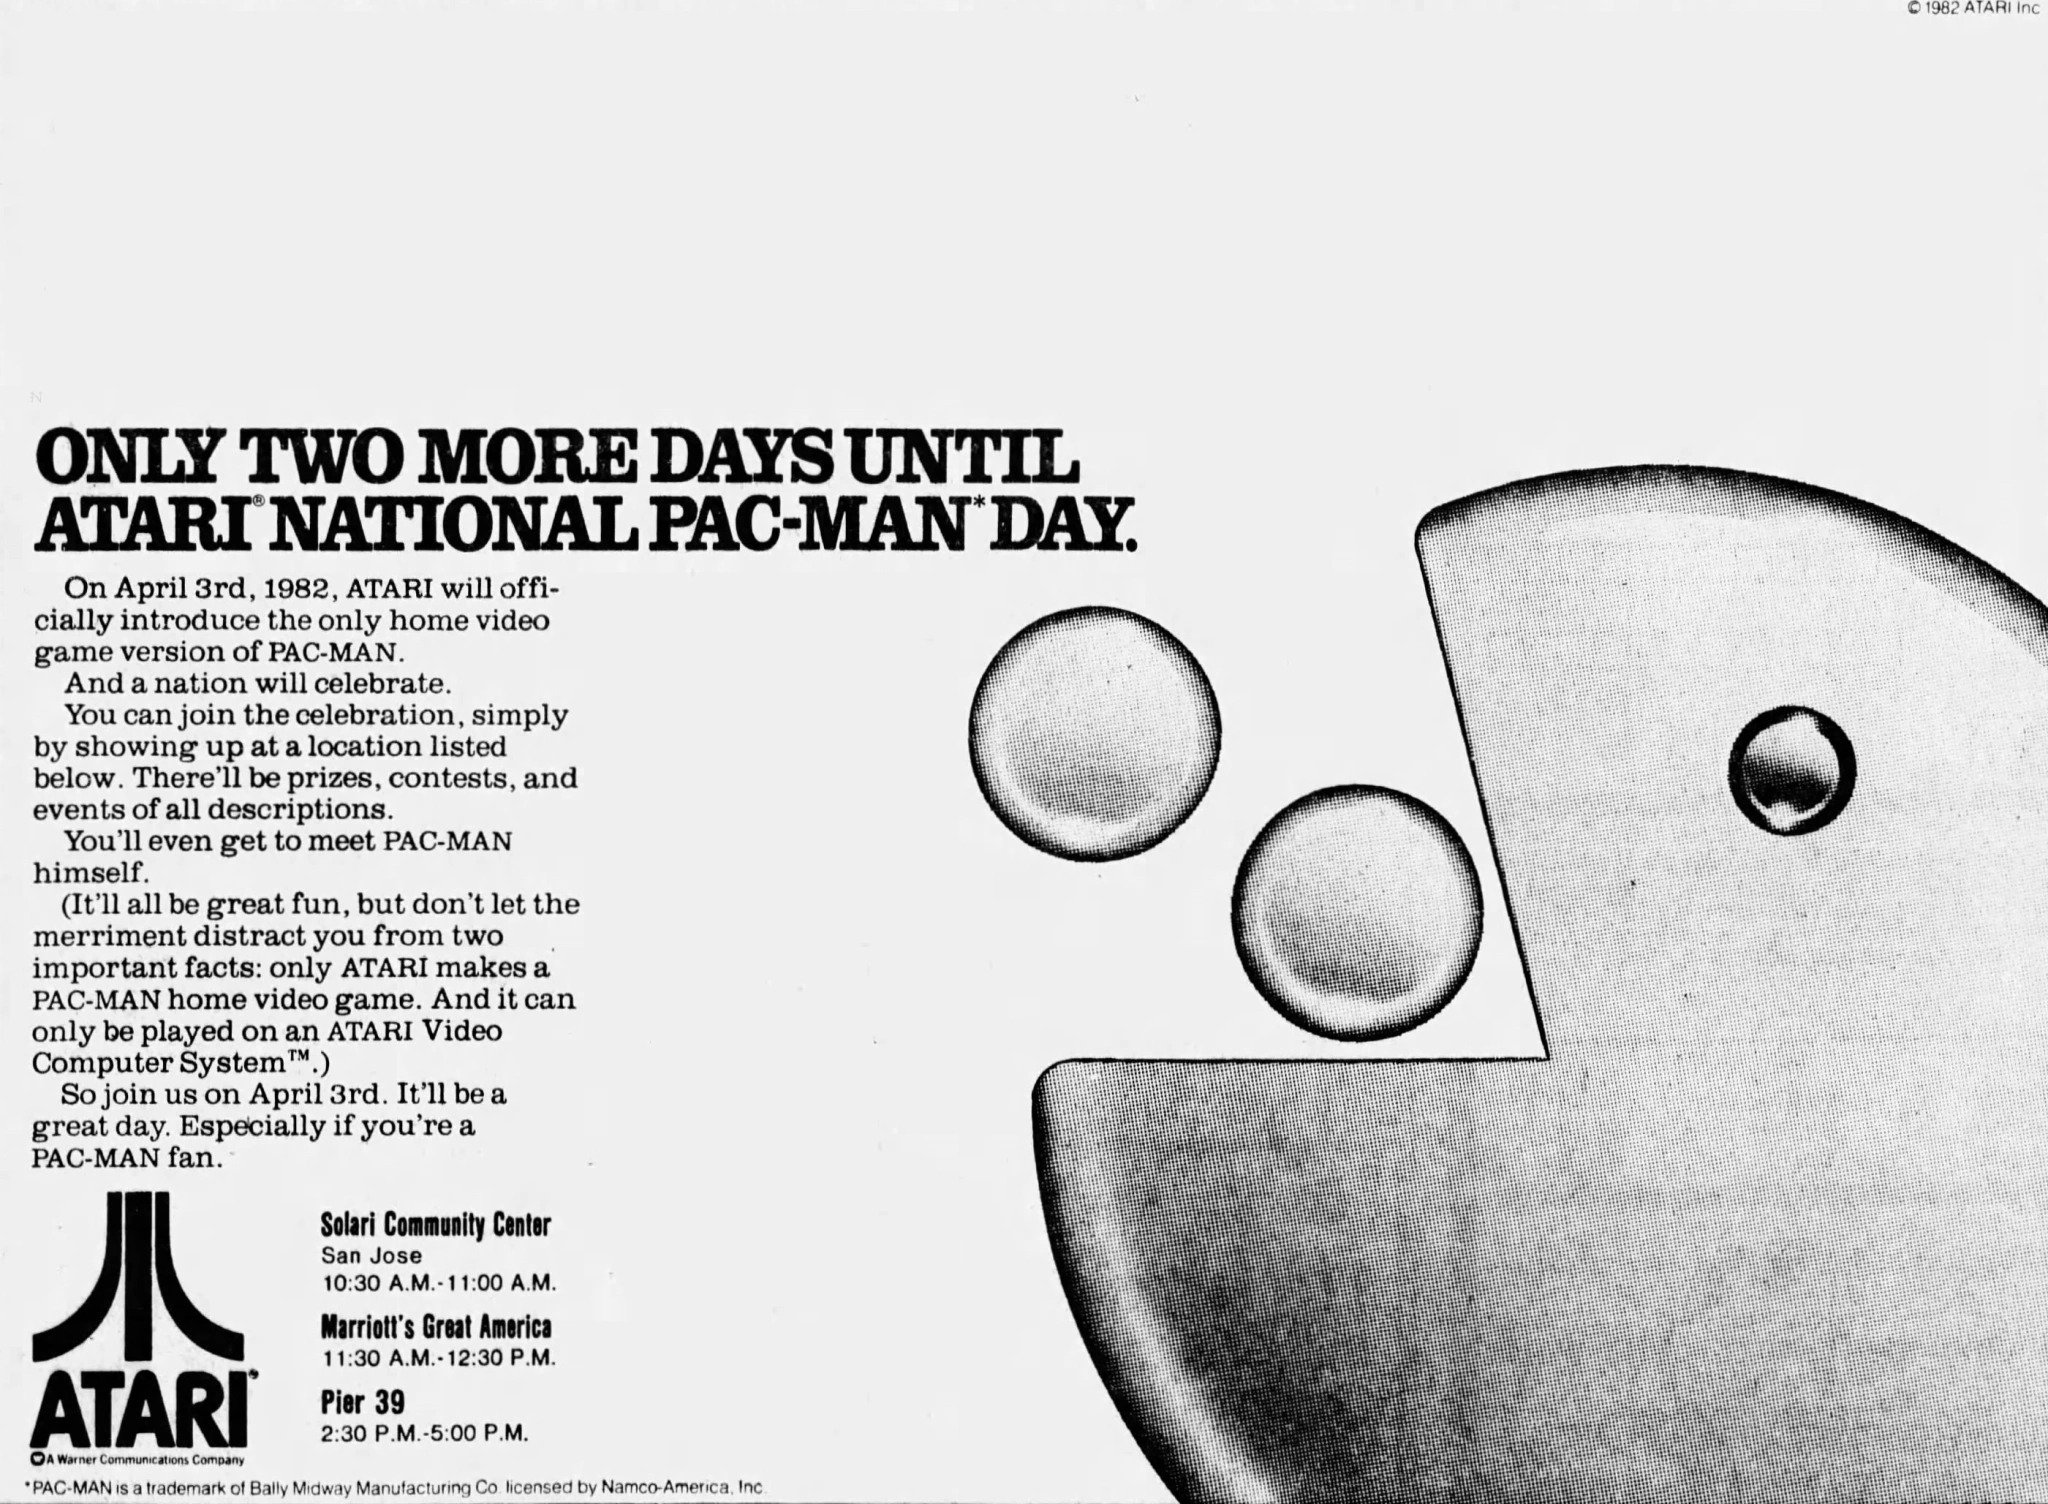 1982-04-01，《旧金山考察报》第F5页，在“全国吃豆人日”开始前两天放出的整版广告。